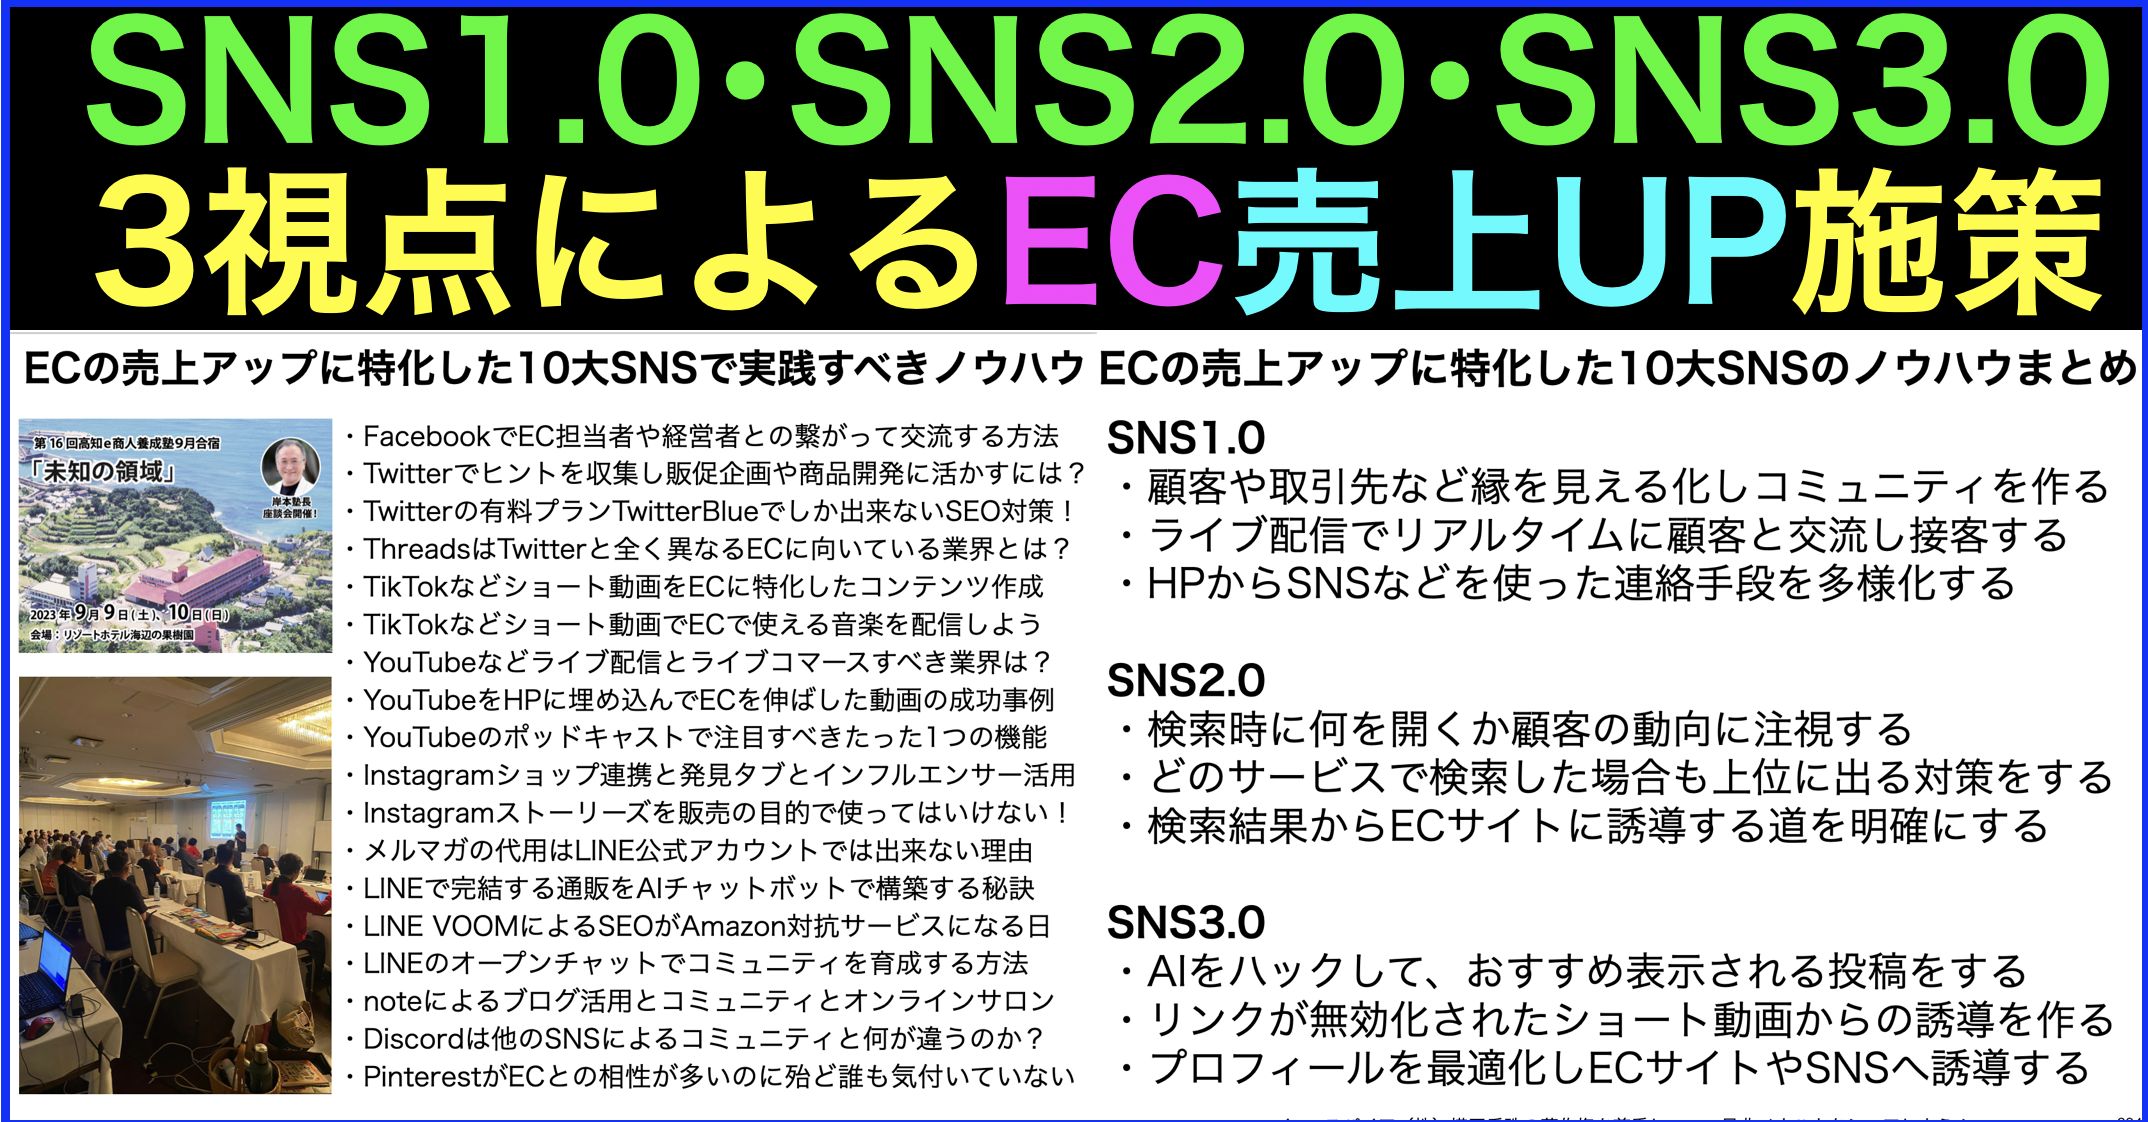 SNS1.0、SNS2.0、SNS3.0の視点でECの売上をUPさせる施策